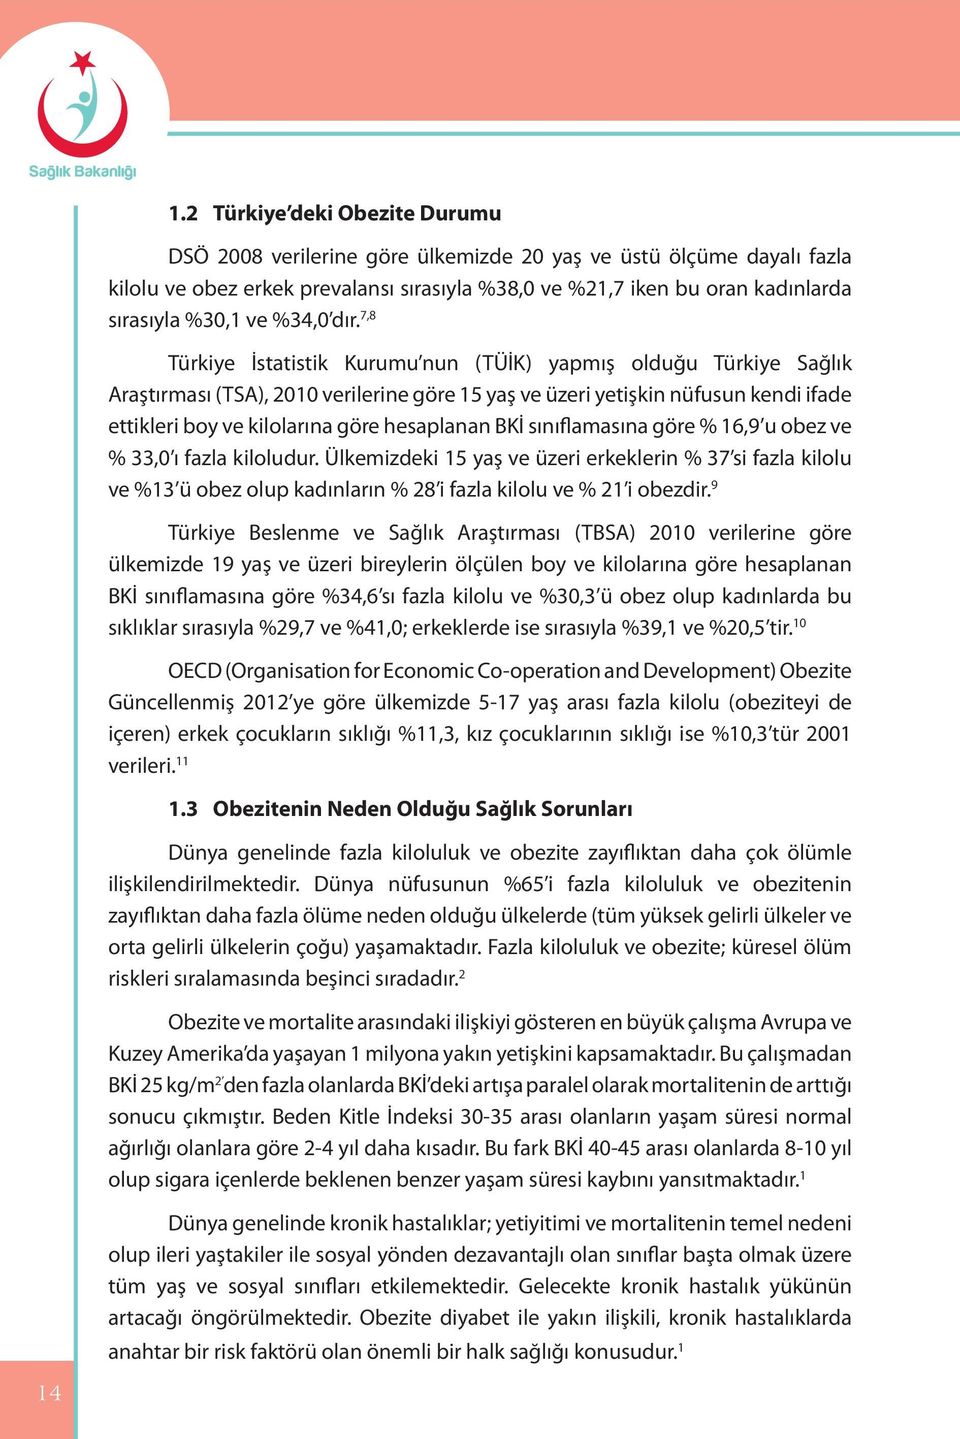 7,8 Türkiye İstatistik Kurumu nun (TÜİK) yapmış olduğu Türkiye Sağlık Araştırması (TSA), 2010 verilerine göre 15 yaş ve üzeri yetişkin nüfusun kendi ifade ettikleri boy ve kilolarına göre hesaplanan